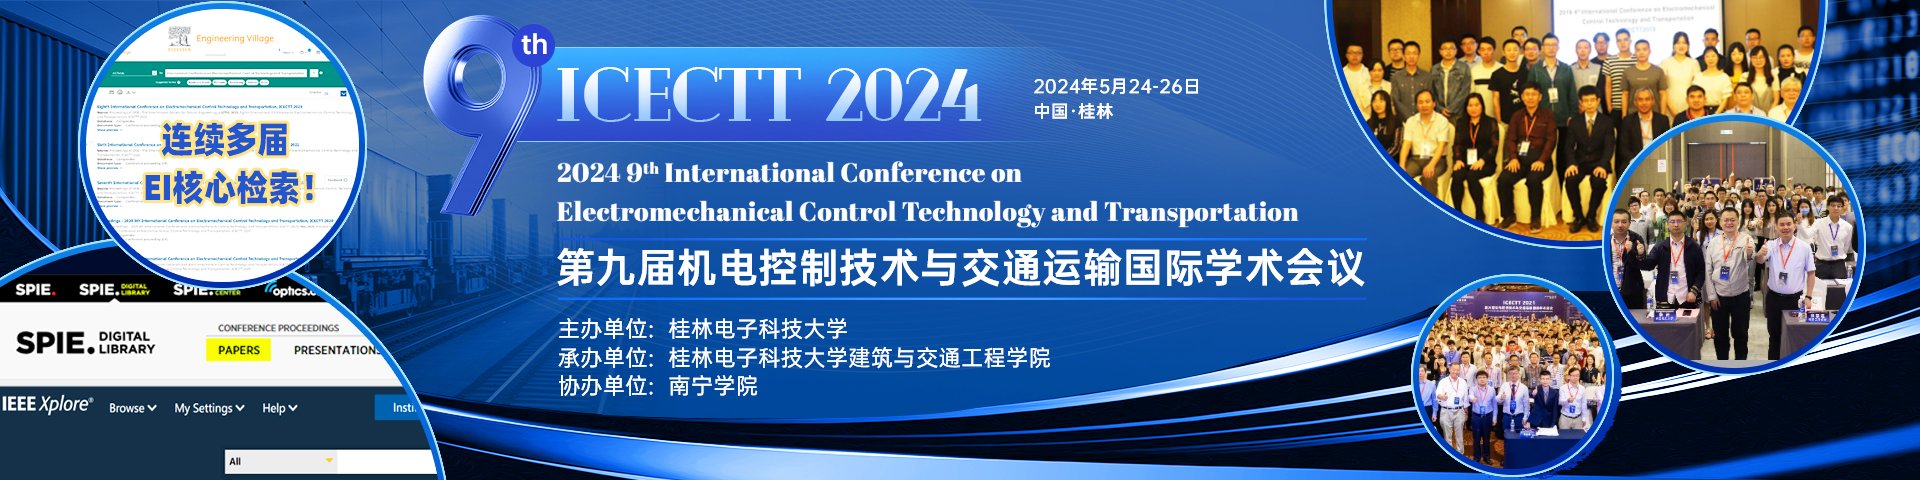 5月桂林-ICECT 2024-会议官网.jpg